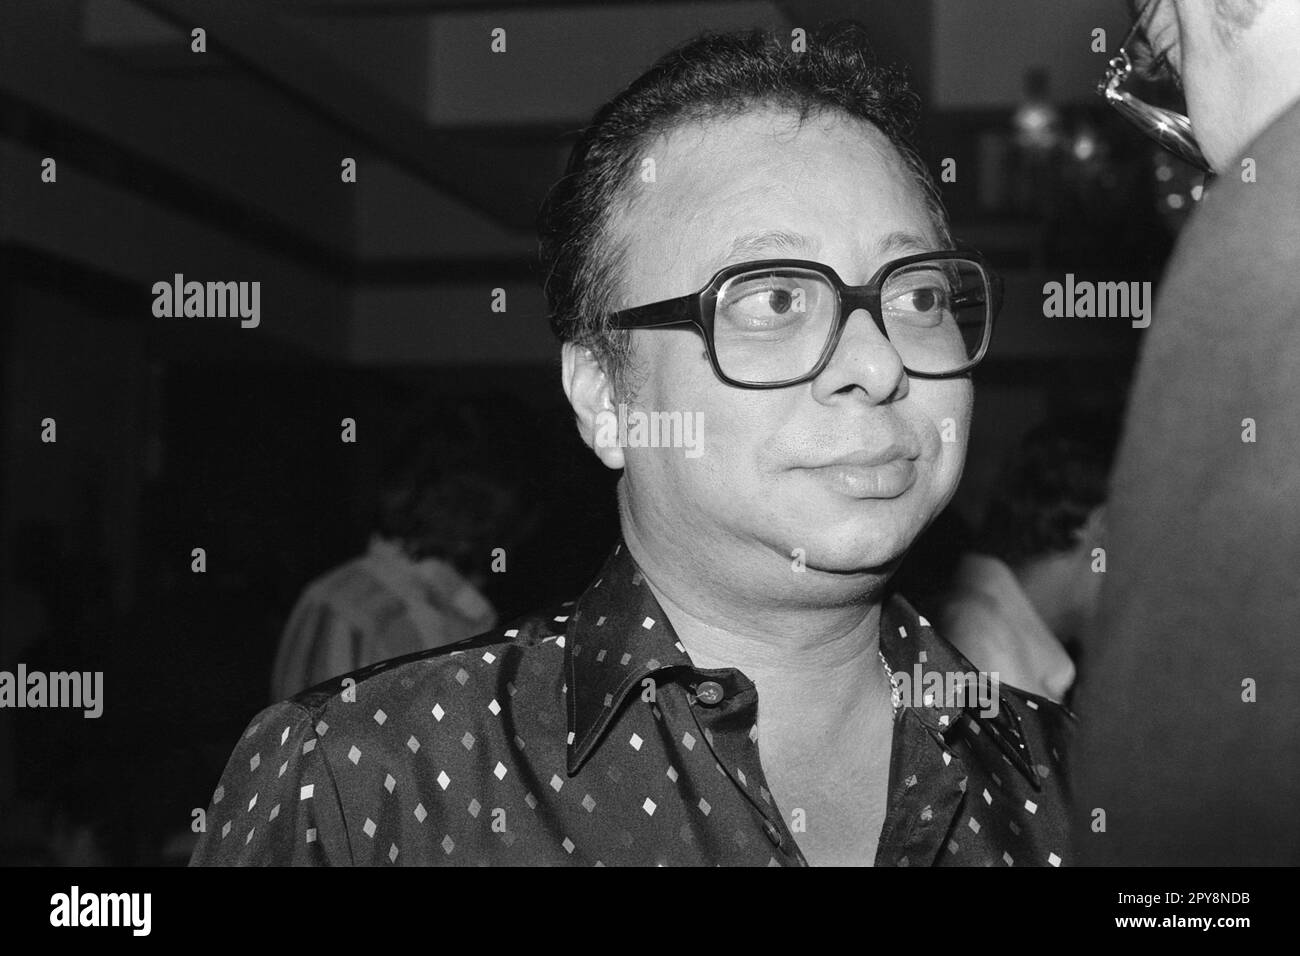 Vieux millésime indien 1980s noir et blanc bollywood cinéma hindi film acteur, Inde, R. D. Burman, Rahul Dev Burman, directeur musical indien, Inde Banque D'Images